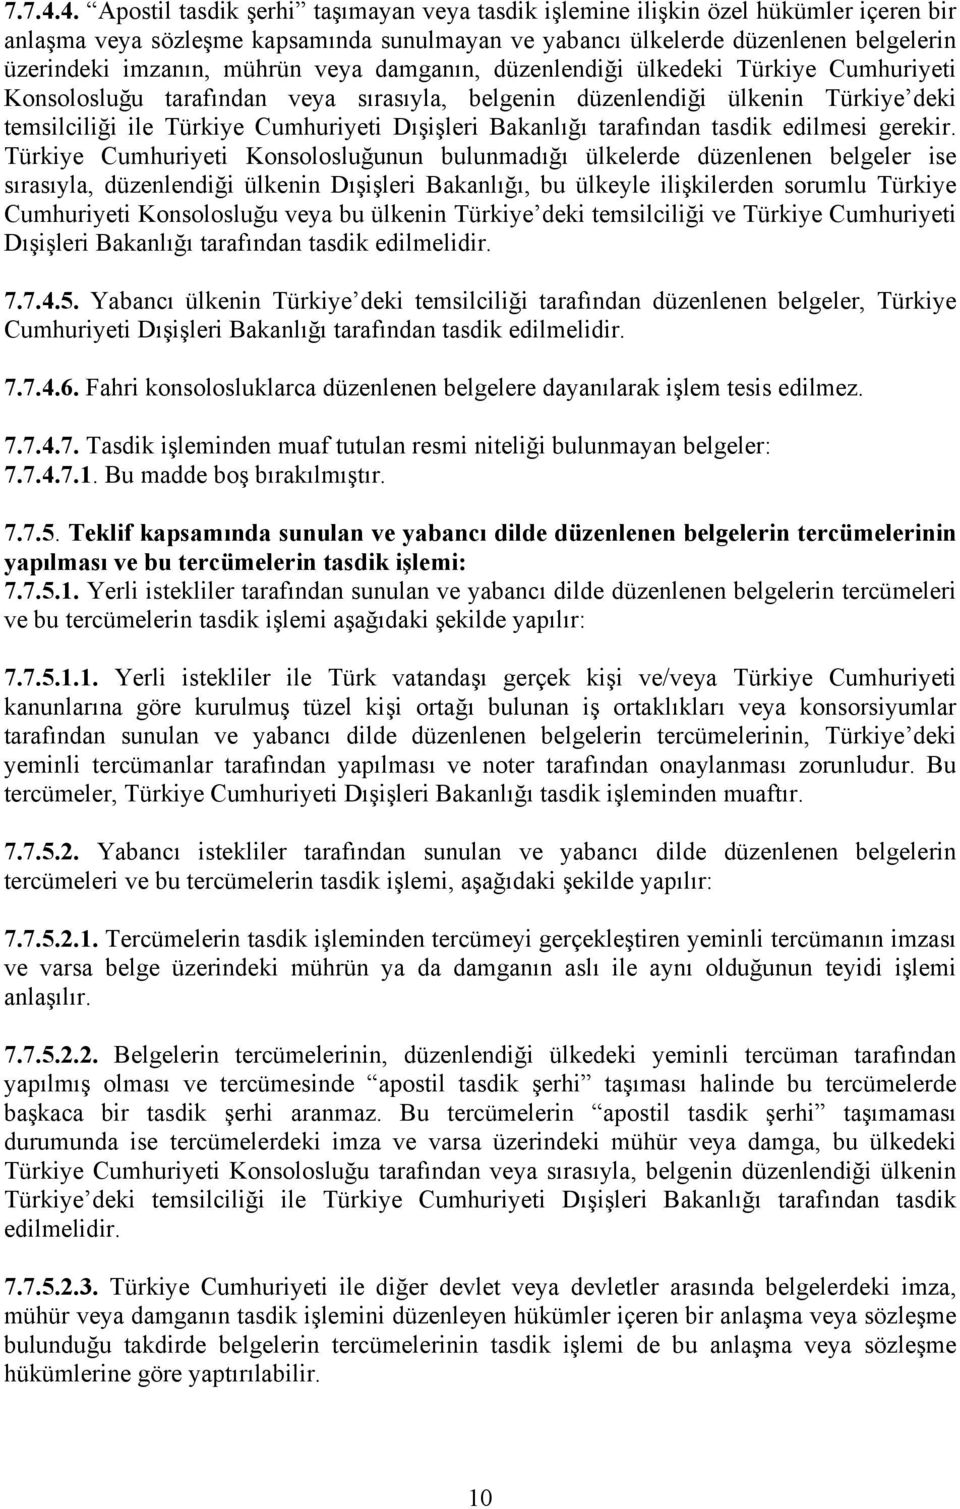 mührün veya damganın, düzenlendiği ülkedeki Türkiye Cumhuriyeti Konsolosluğu tarafından veya sırasıyla, belgenin düzenlendiği ülkenin Türkiye deki temsilciliği ile Türkiye Cumhuriyeti Dışişleri